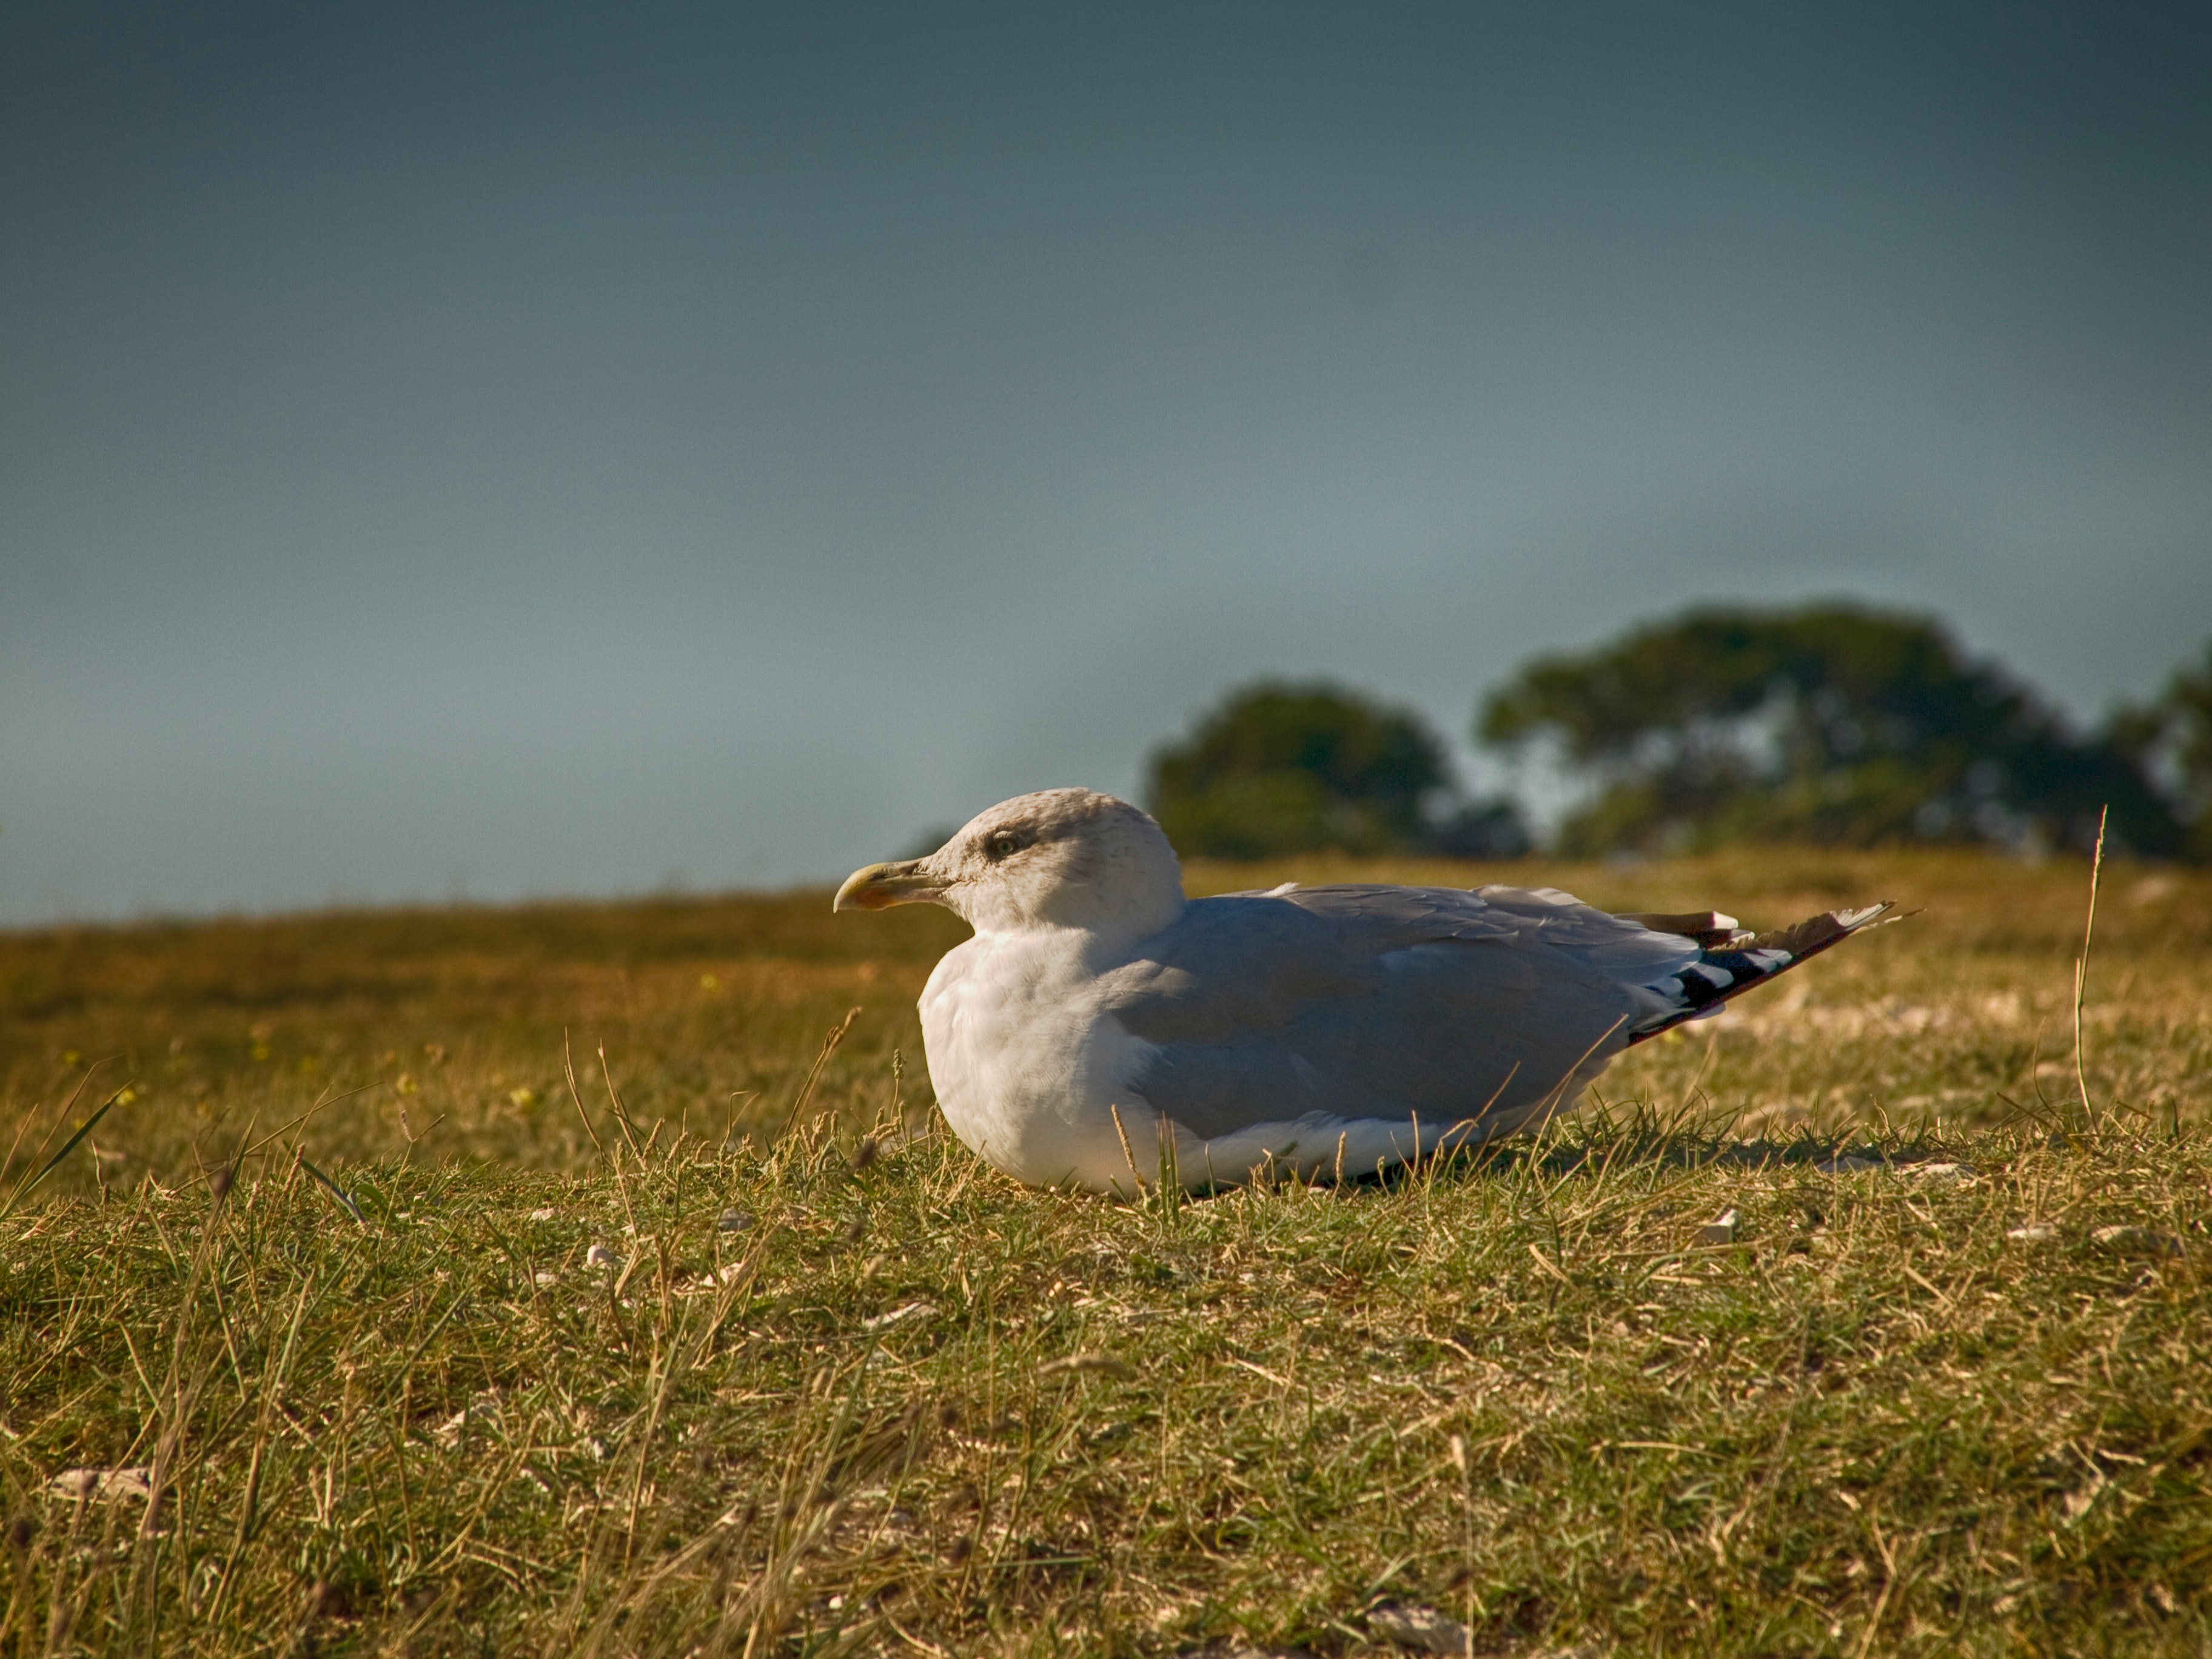 Bird sitting on grassy ground photo